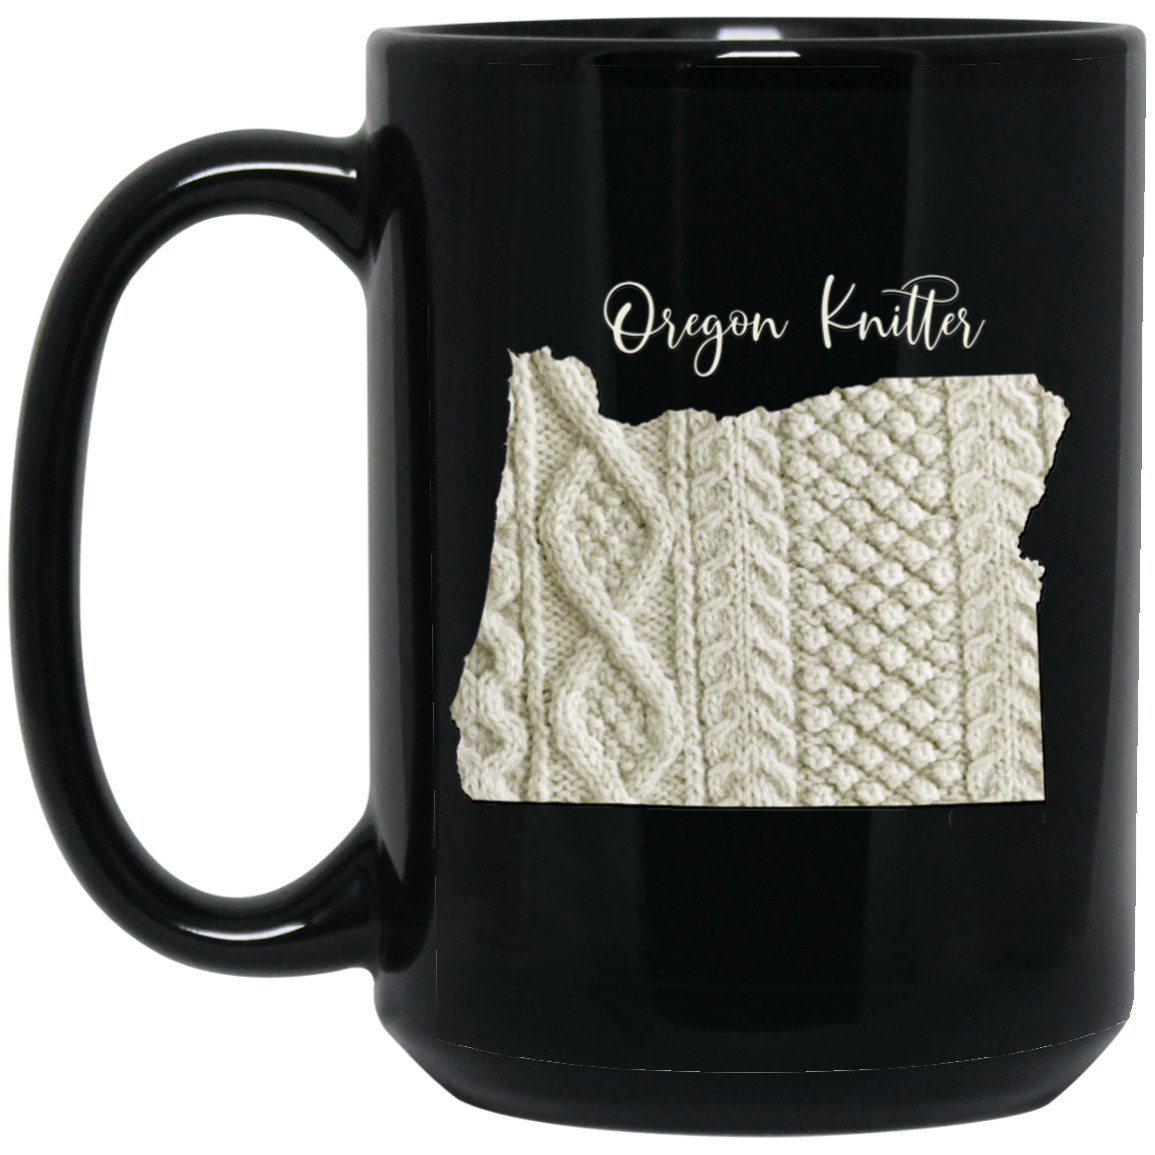 Oregon Knitter Mugs